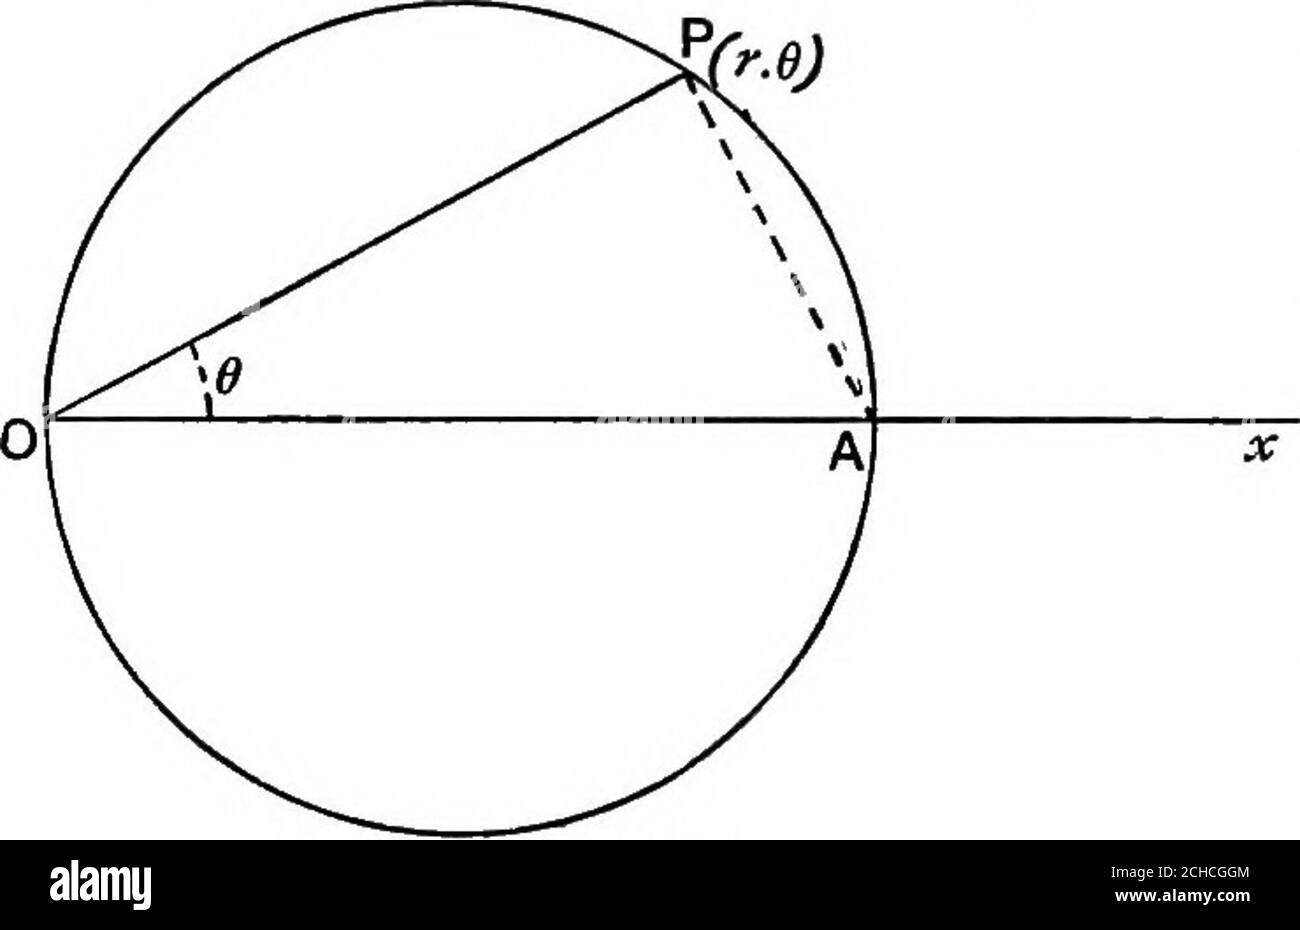 . Géométrie algébrique; un nouveau traité sur les sections coniques analytiques . Cochon. 74 lPOQ, = l PCS - L QjOx =6-a;. OQ = OPeos(0-a),c.-à-d. a = rms{9-a) est l'équation de la tangente à Q. 120. Pour trouver l'équation polaire d'un cercle de rayon a dont le cir-cumul passesO-^J throvgh l'origine et dont le centre se trouve dans l'initiallim.   soit P(r, 6) ^ n'importe quel point sur la circonférence et DA le diamètre à travers l'origine. LOPA est a,rt. L ; PIQ. 75. .. OP = DA cos 6, c.-à-d. r = 2a cos 6 est l'équation requise. ART. 122.] ÉQUATION BOLAE D'UN CERCLE. 115 121. Tofmd l'équation de la tangente à la cirele Banque D'Images